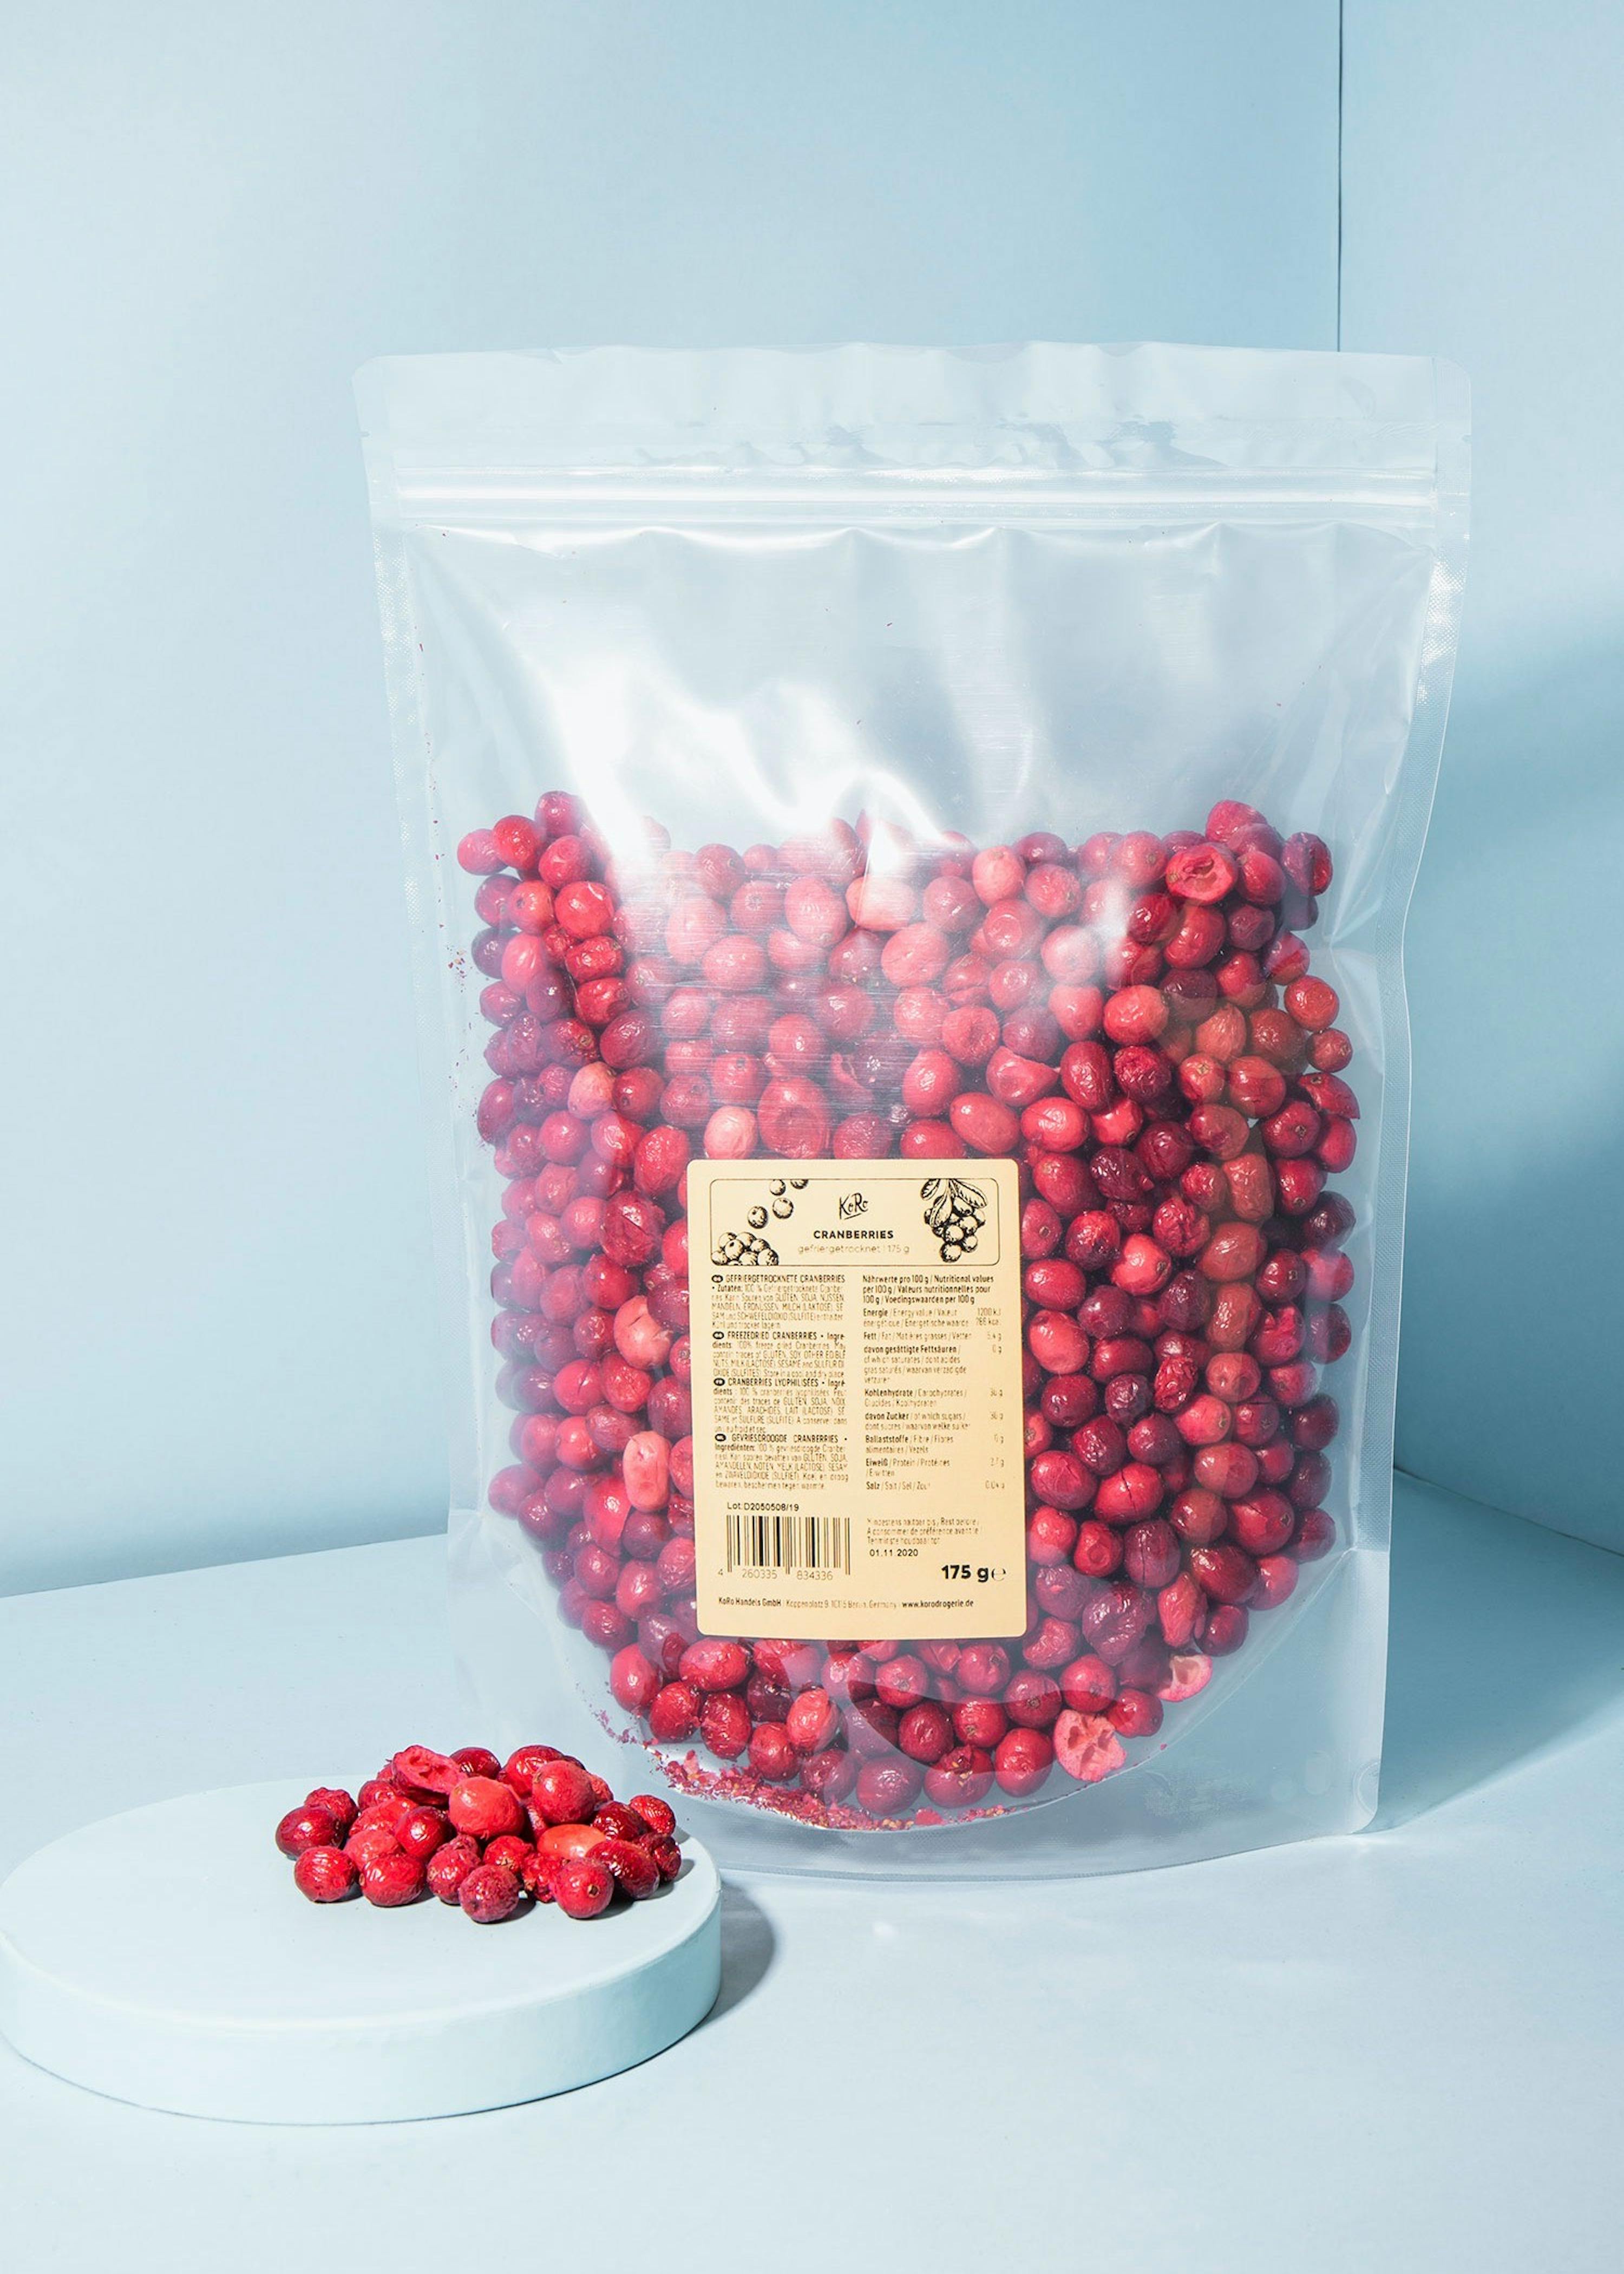 Cranberries séchées bio - Lilifruit